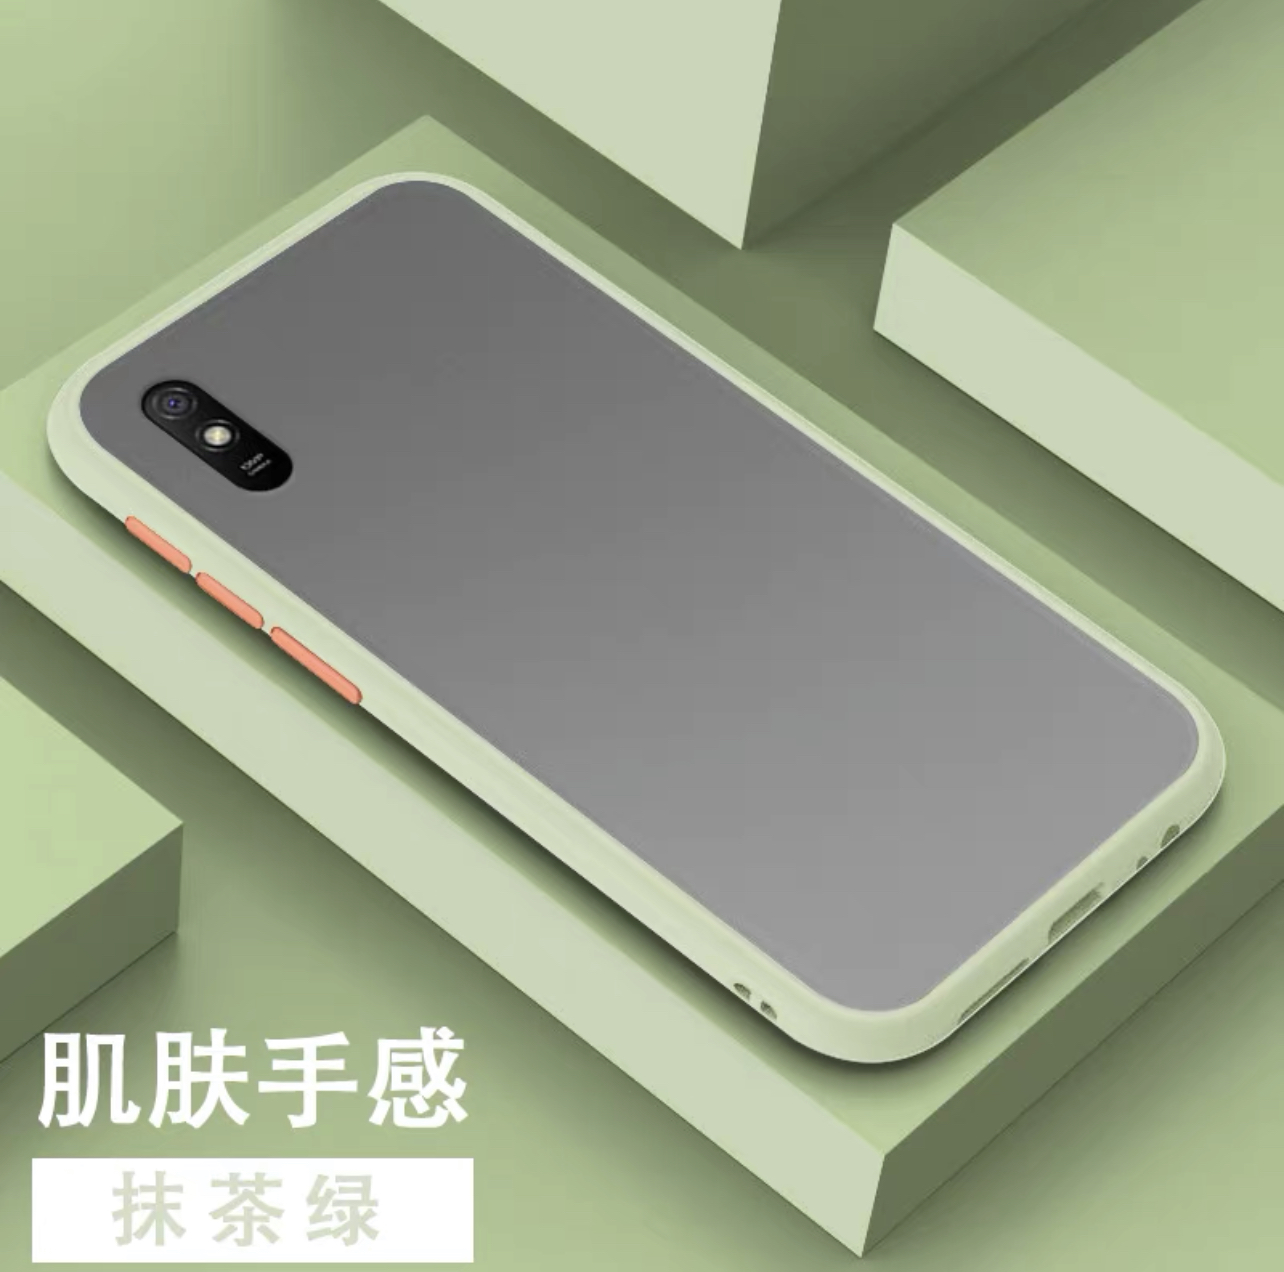 [พร้อมส่งจากไทย] Case Xiaomi Redmi 9A เคสเสี่ยวมี่ เรดมี 9A เคสกันกระแทก ปุ่มสีผิวด้าน สินค้าใหม่ TPU CASE